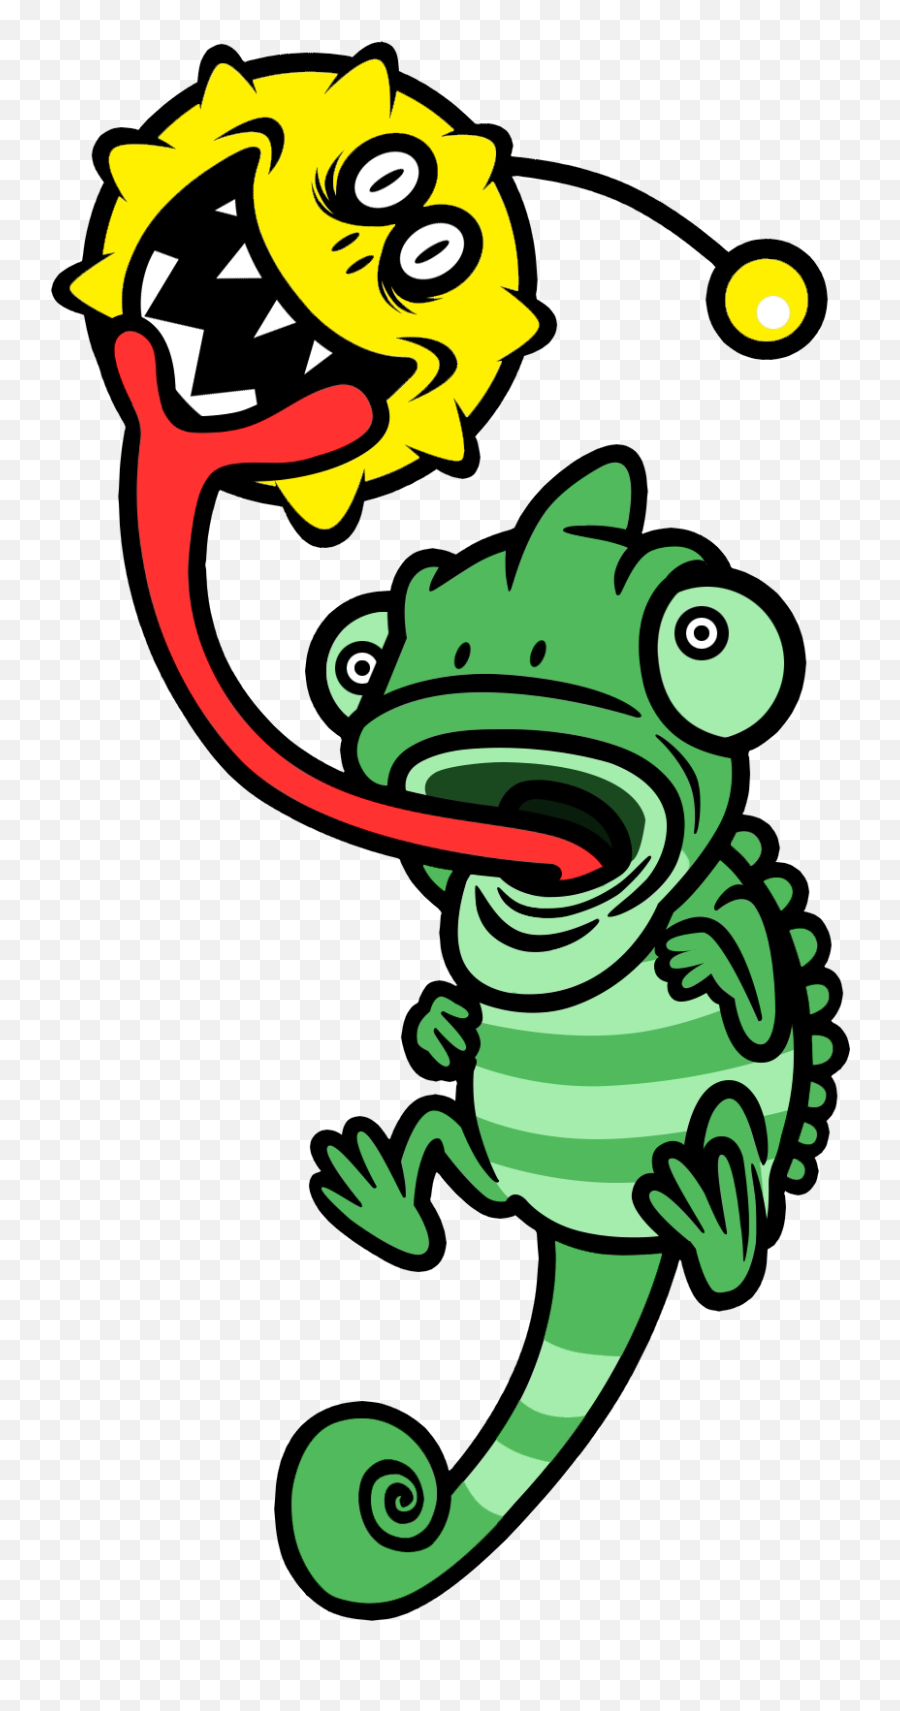 Chameleon - Tongue Lashing Rhythm Heaven Emoji,Rhythm Heaven Logo